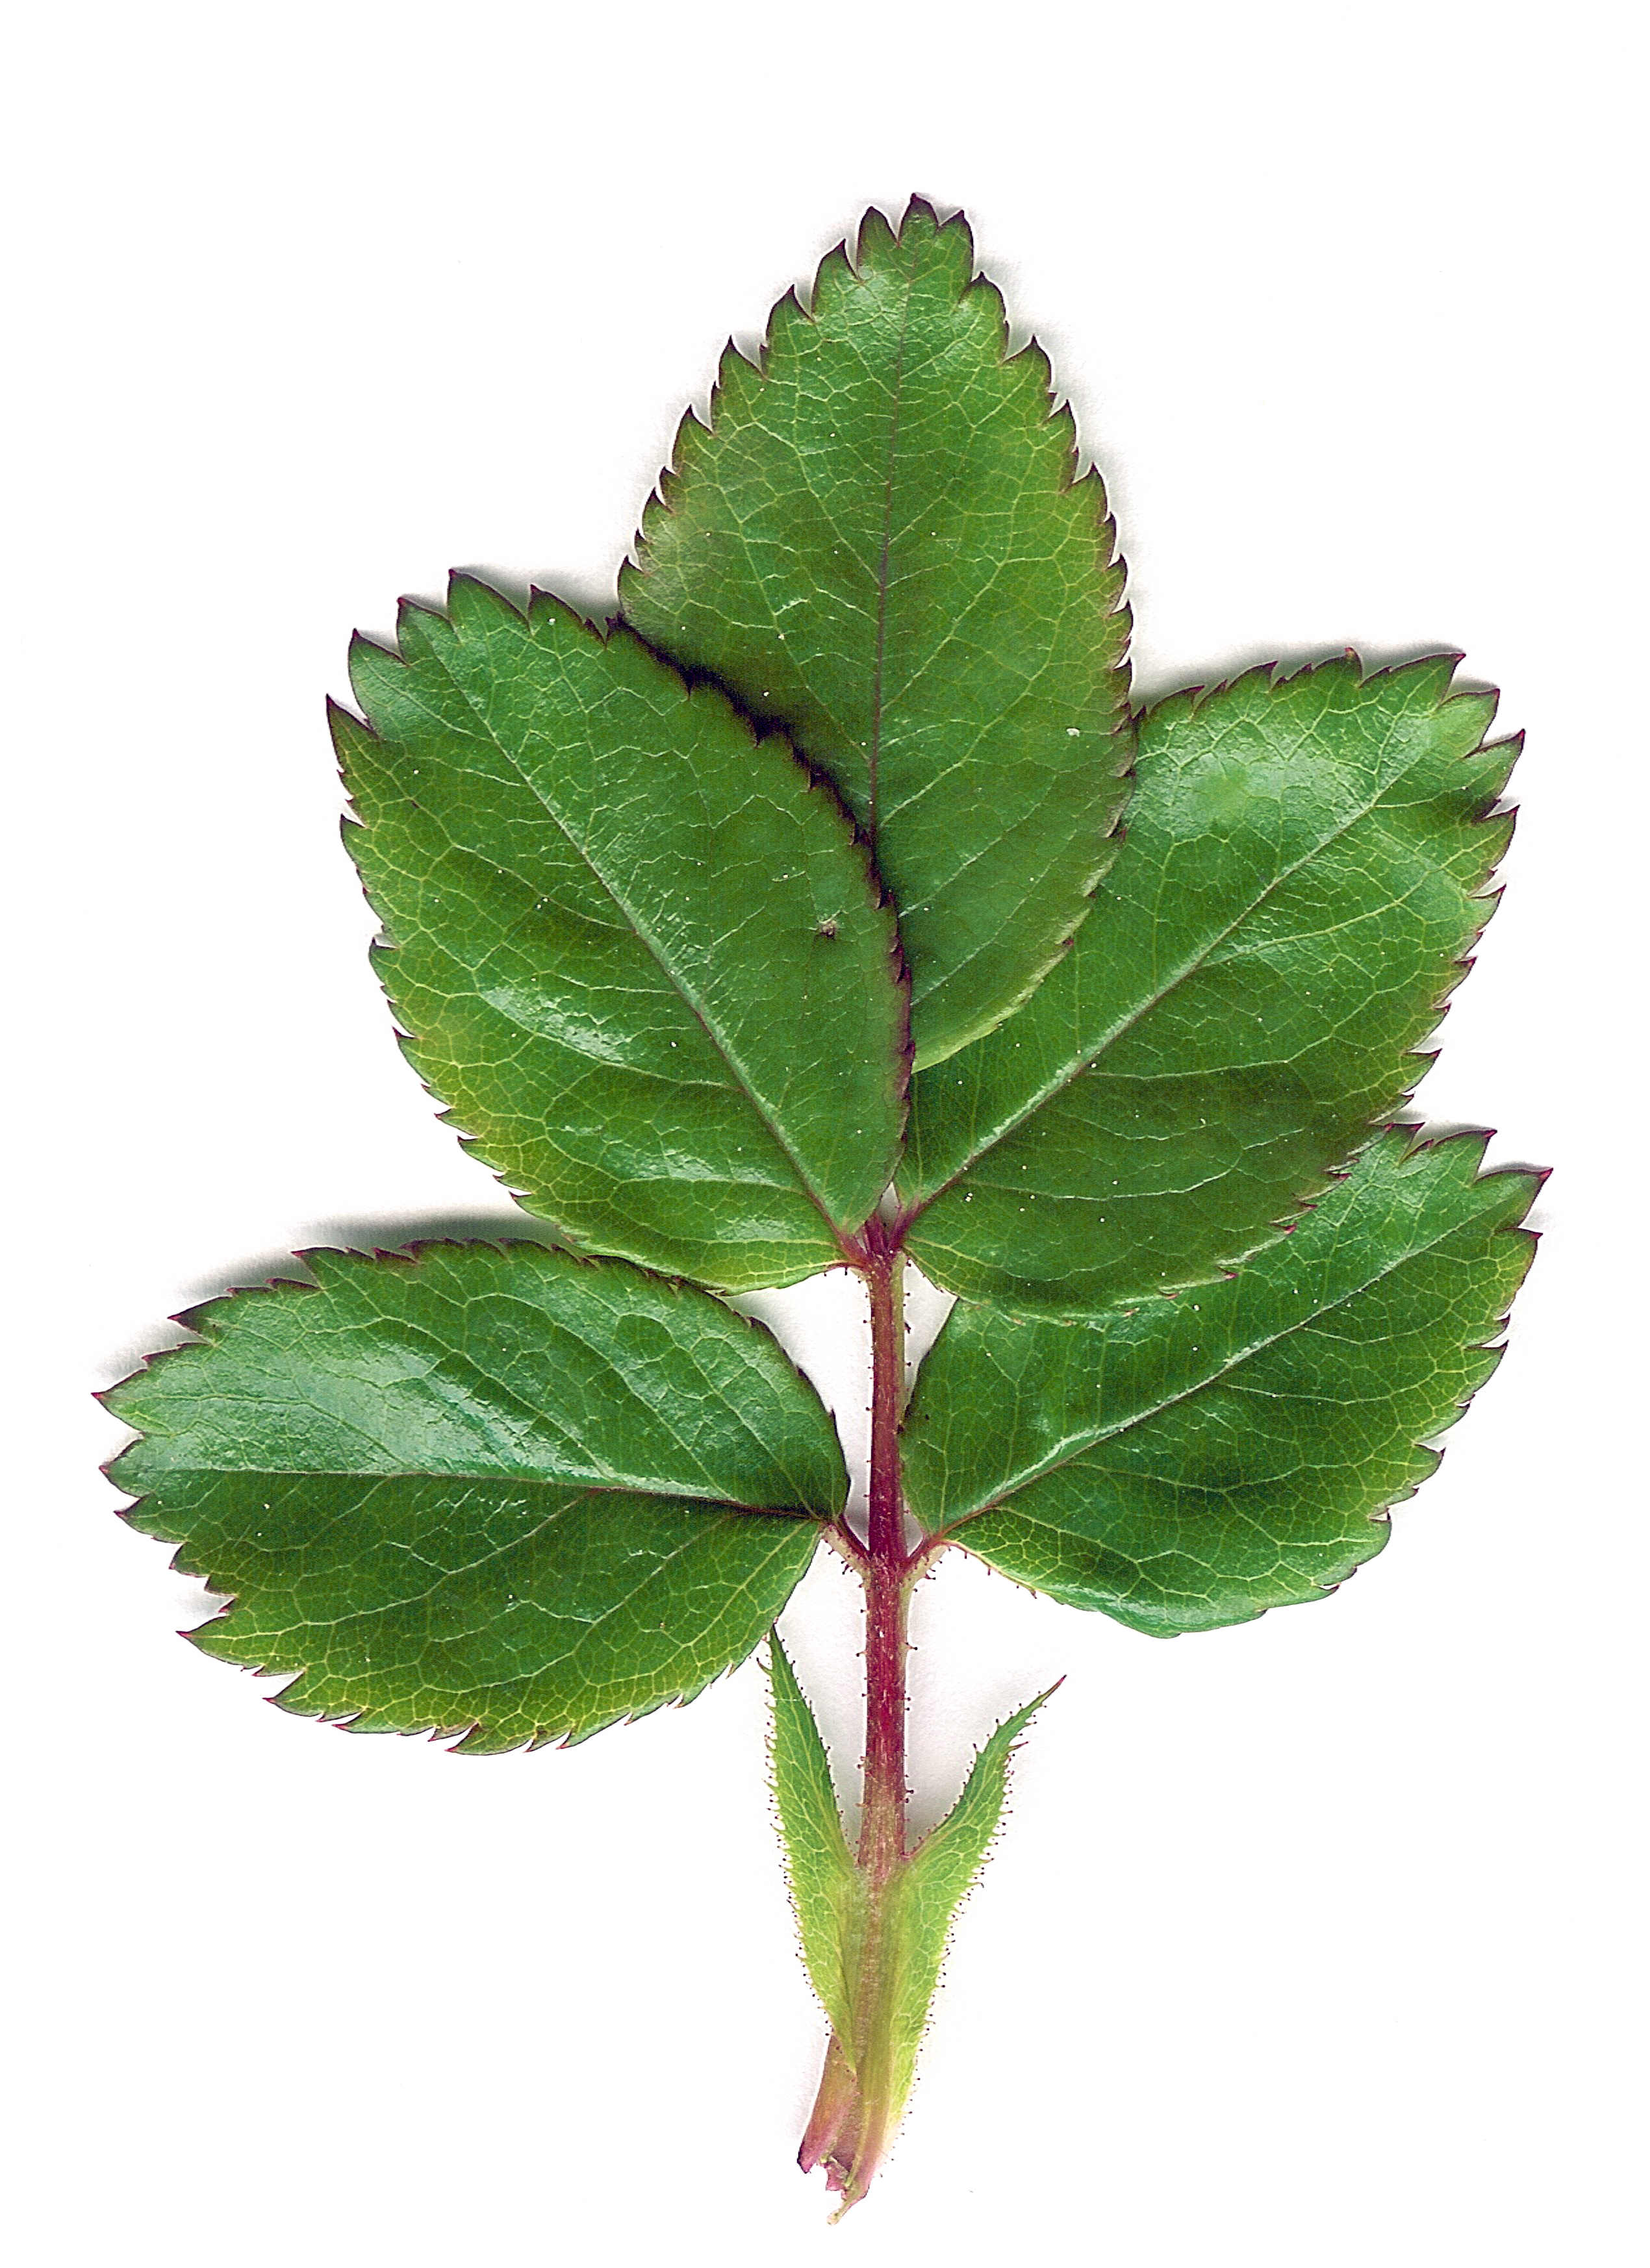 File:Rose Leaf.jpg - Wikimedia Commons